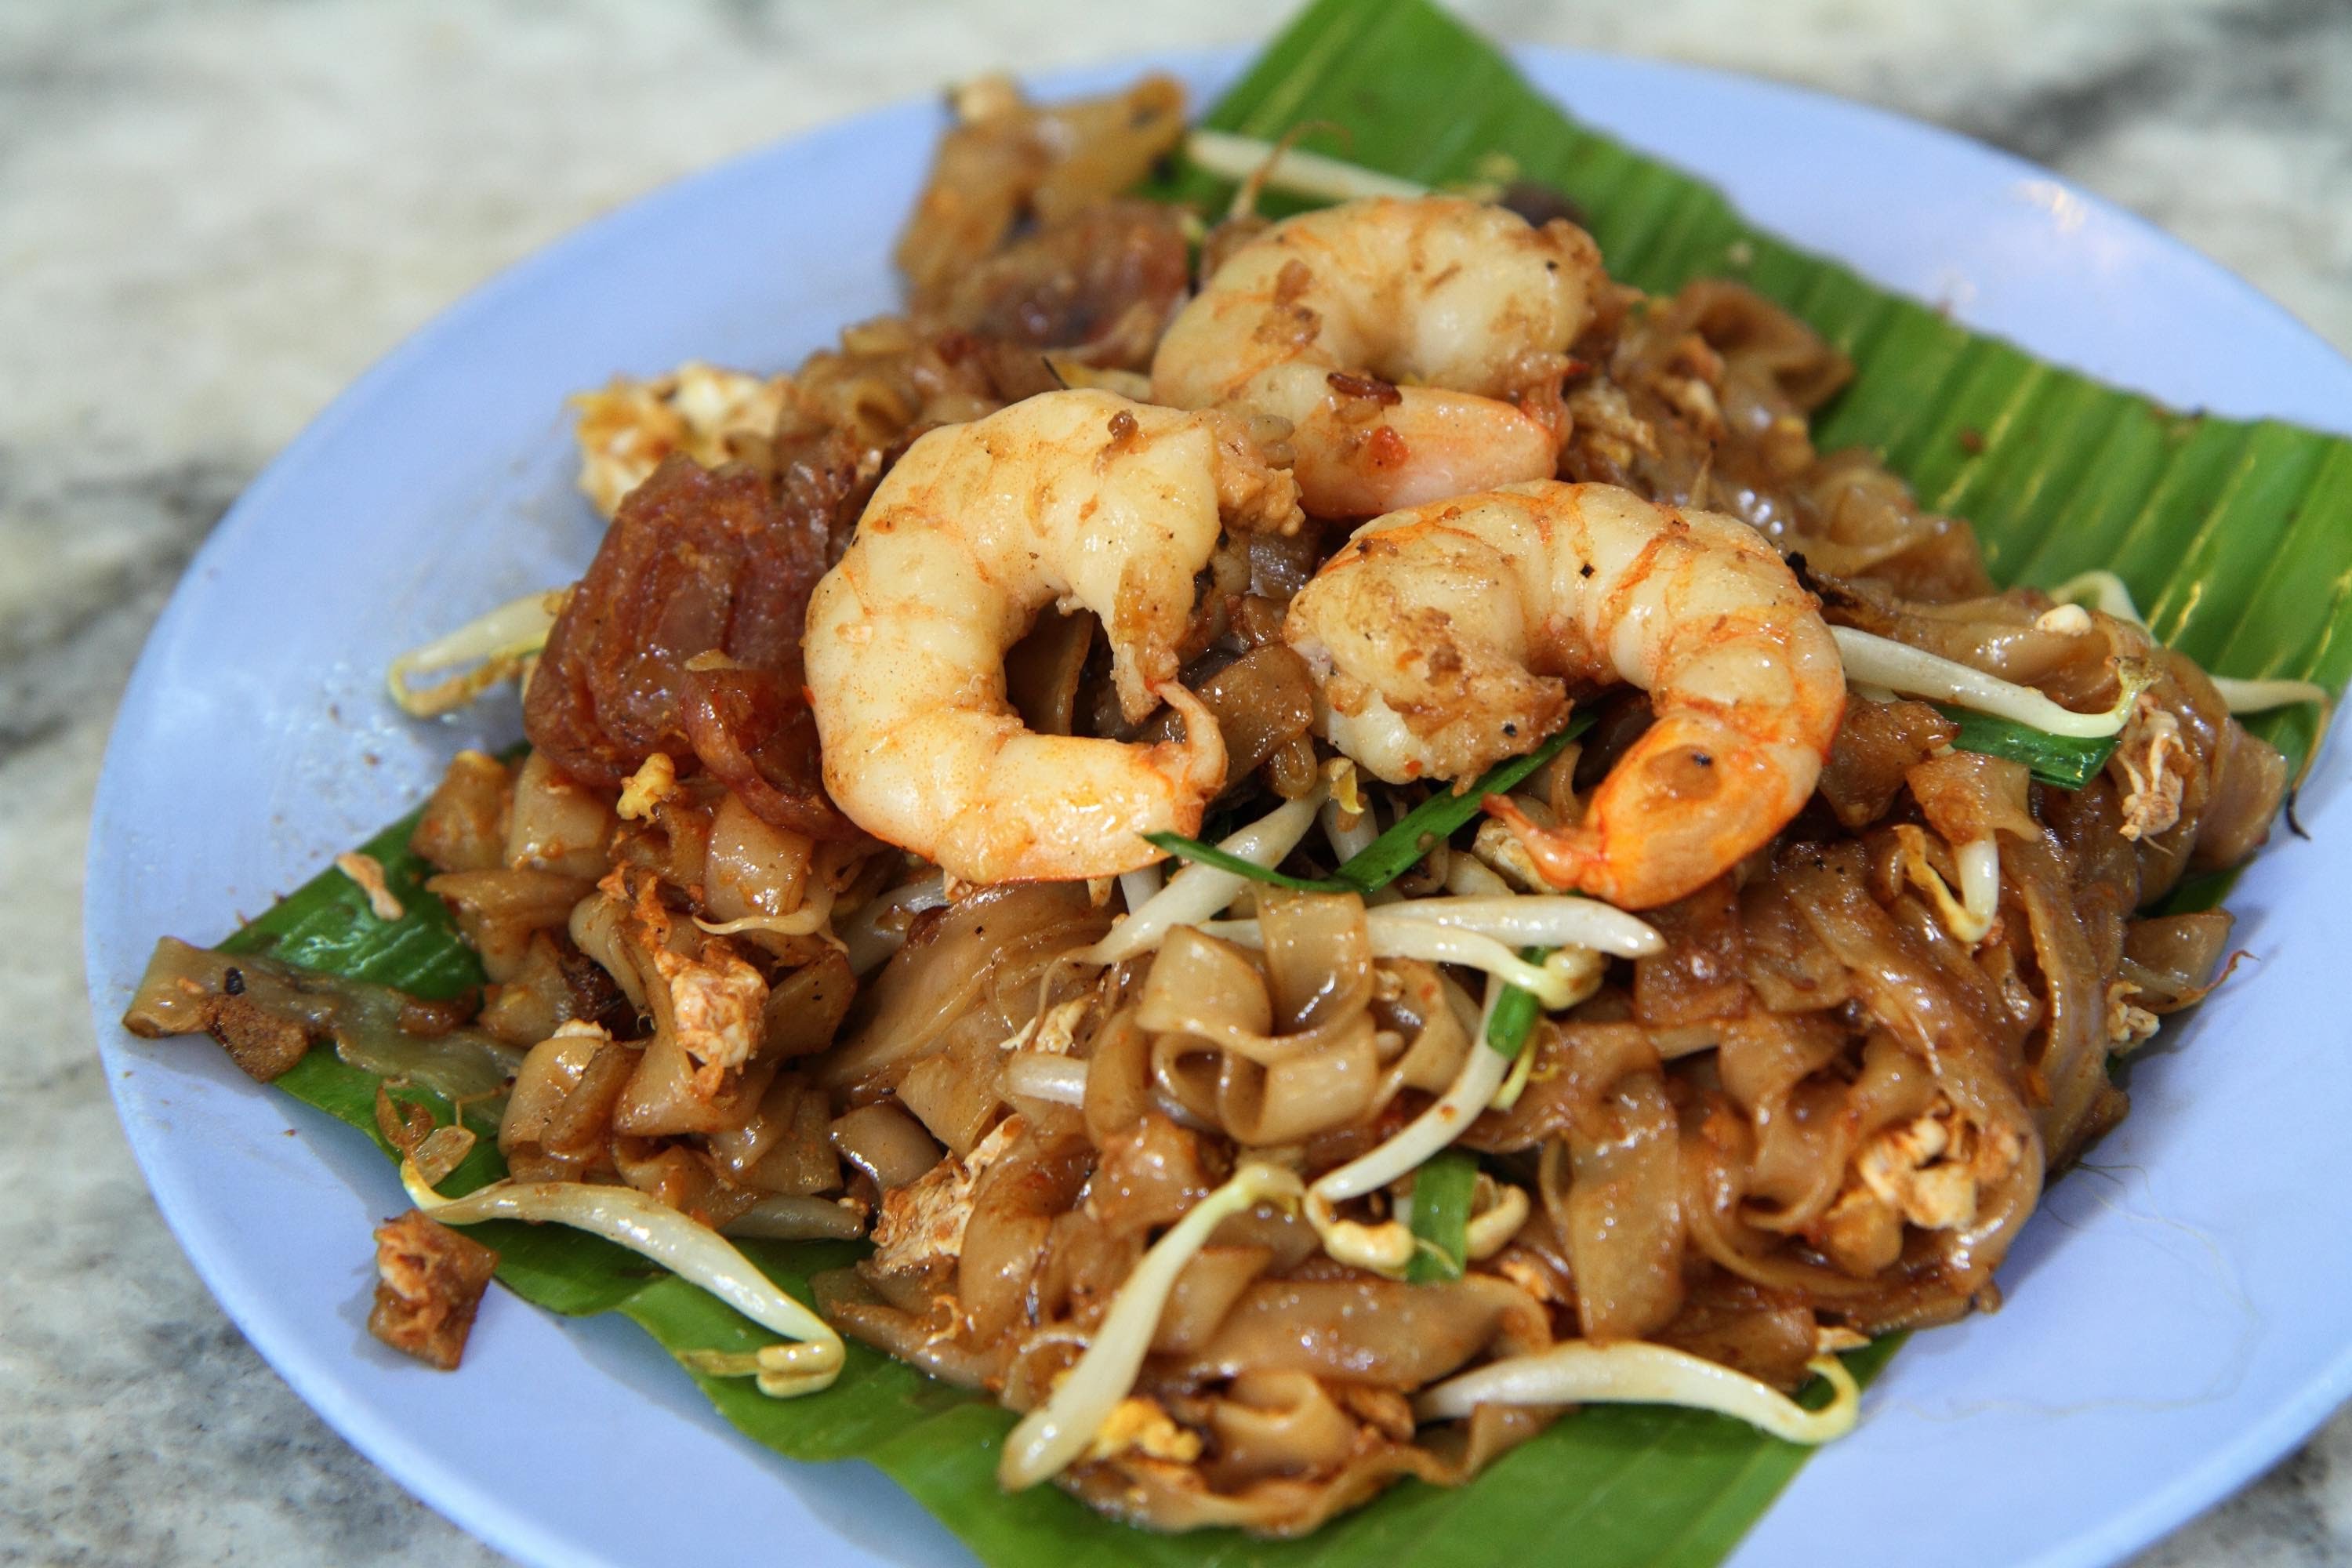 10 Best Must-Eat Food in Penang, Malaysia - Penang Bridge